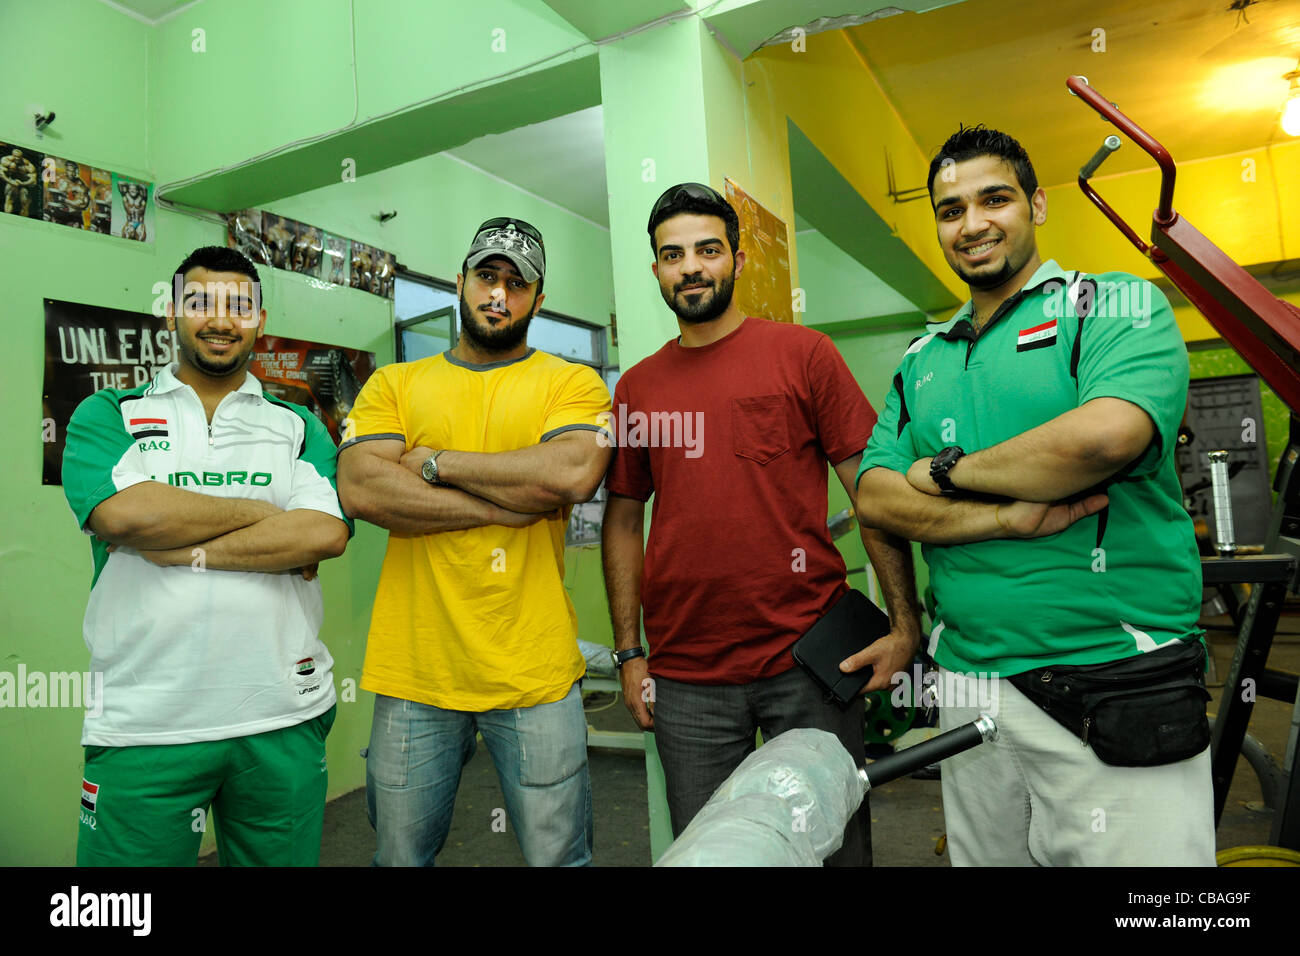 Bagdad, Irak, Hammer Fitness-Studio Karrada wurde damit begonnen, eine Steckdose für die (männlichen) Jugend get rid of Frustrationen zu bieten Stockfoto